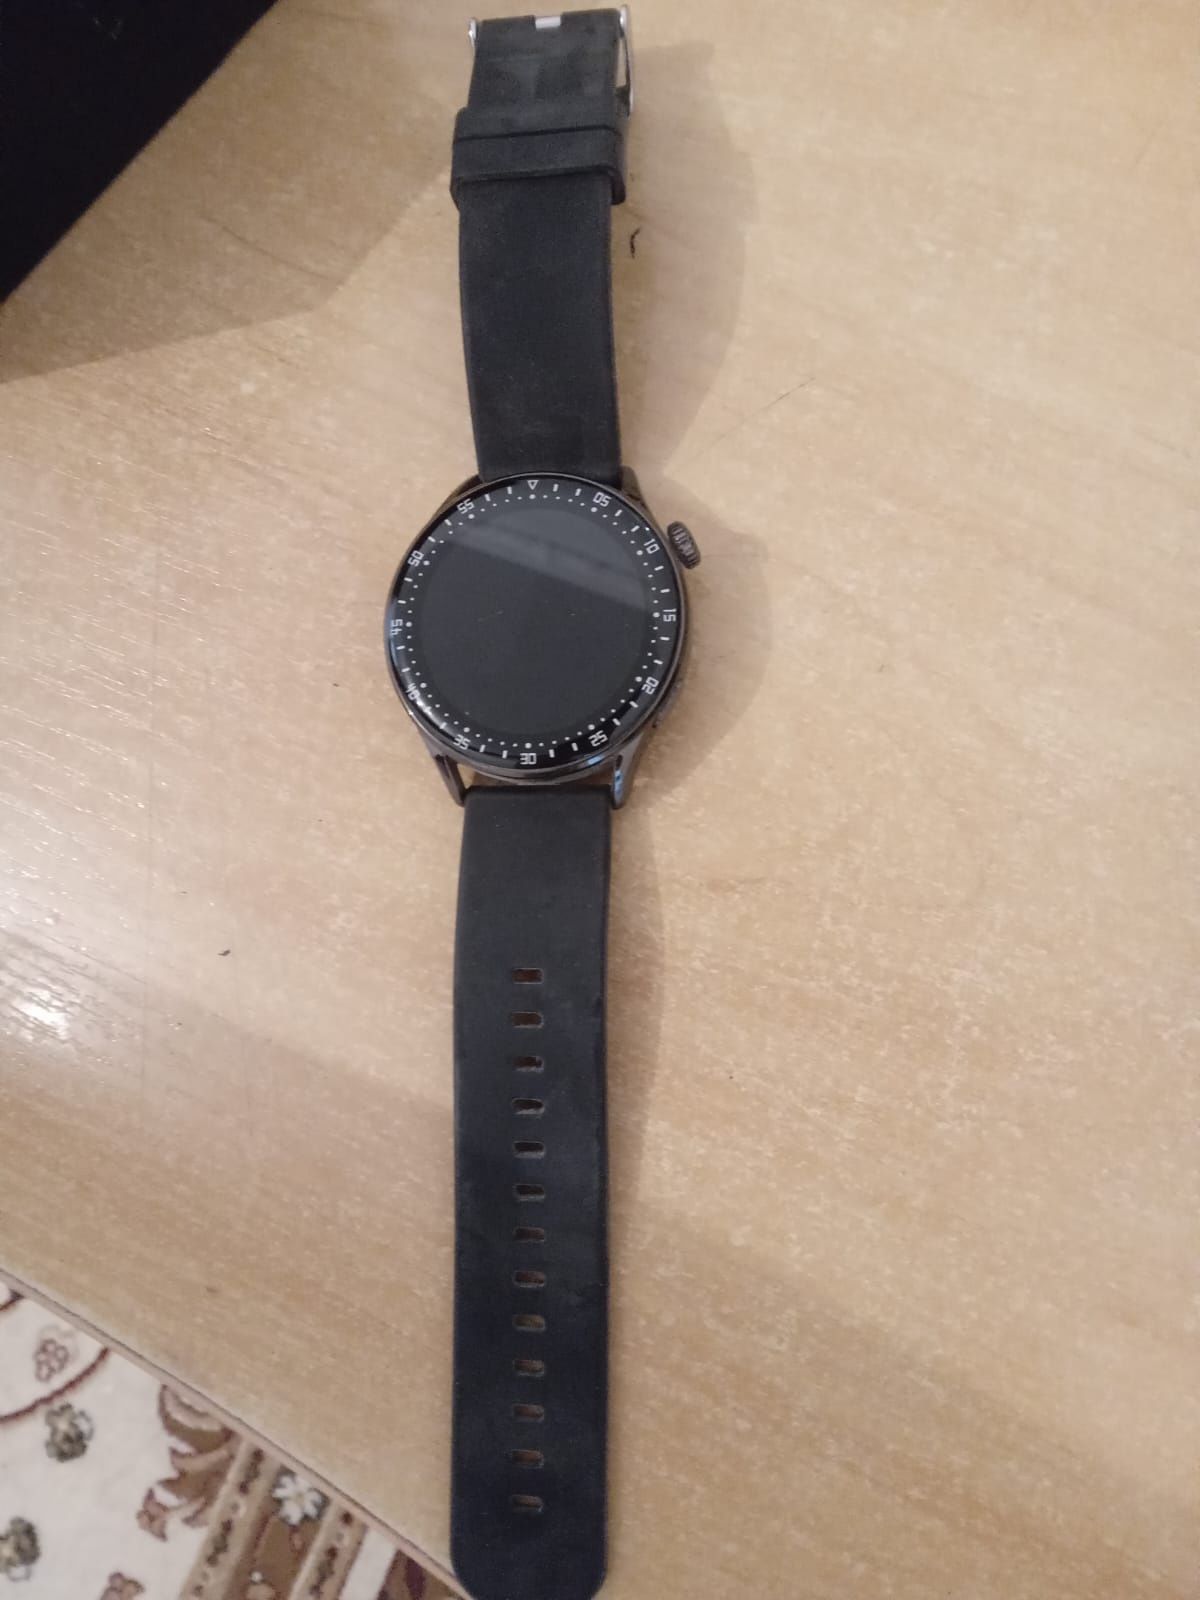 Huawei smart watch 3